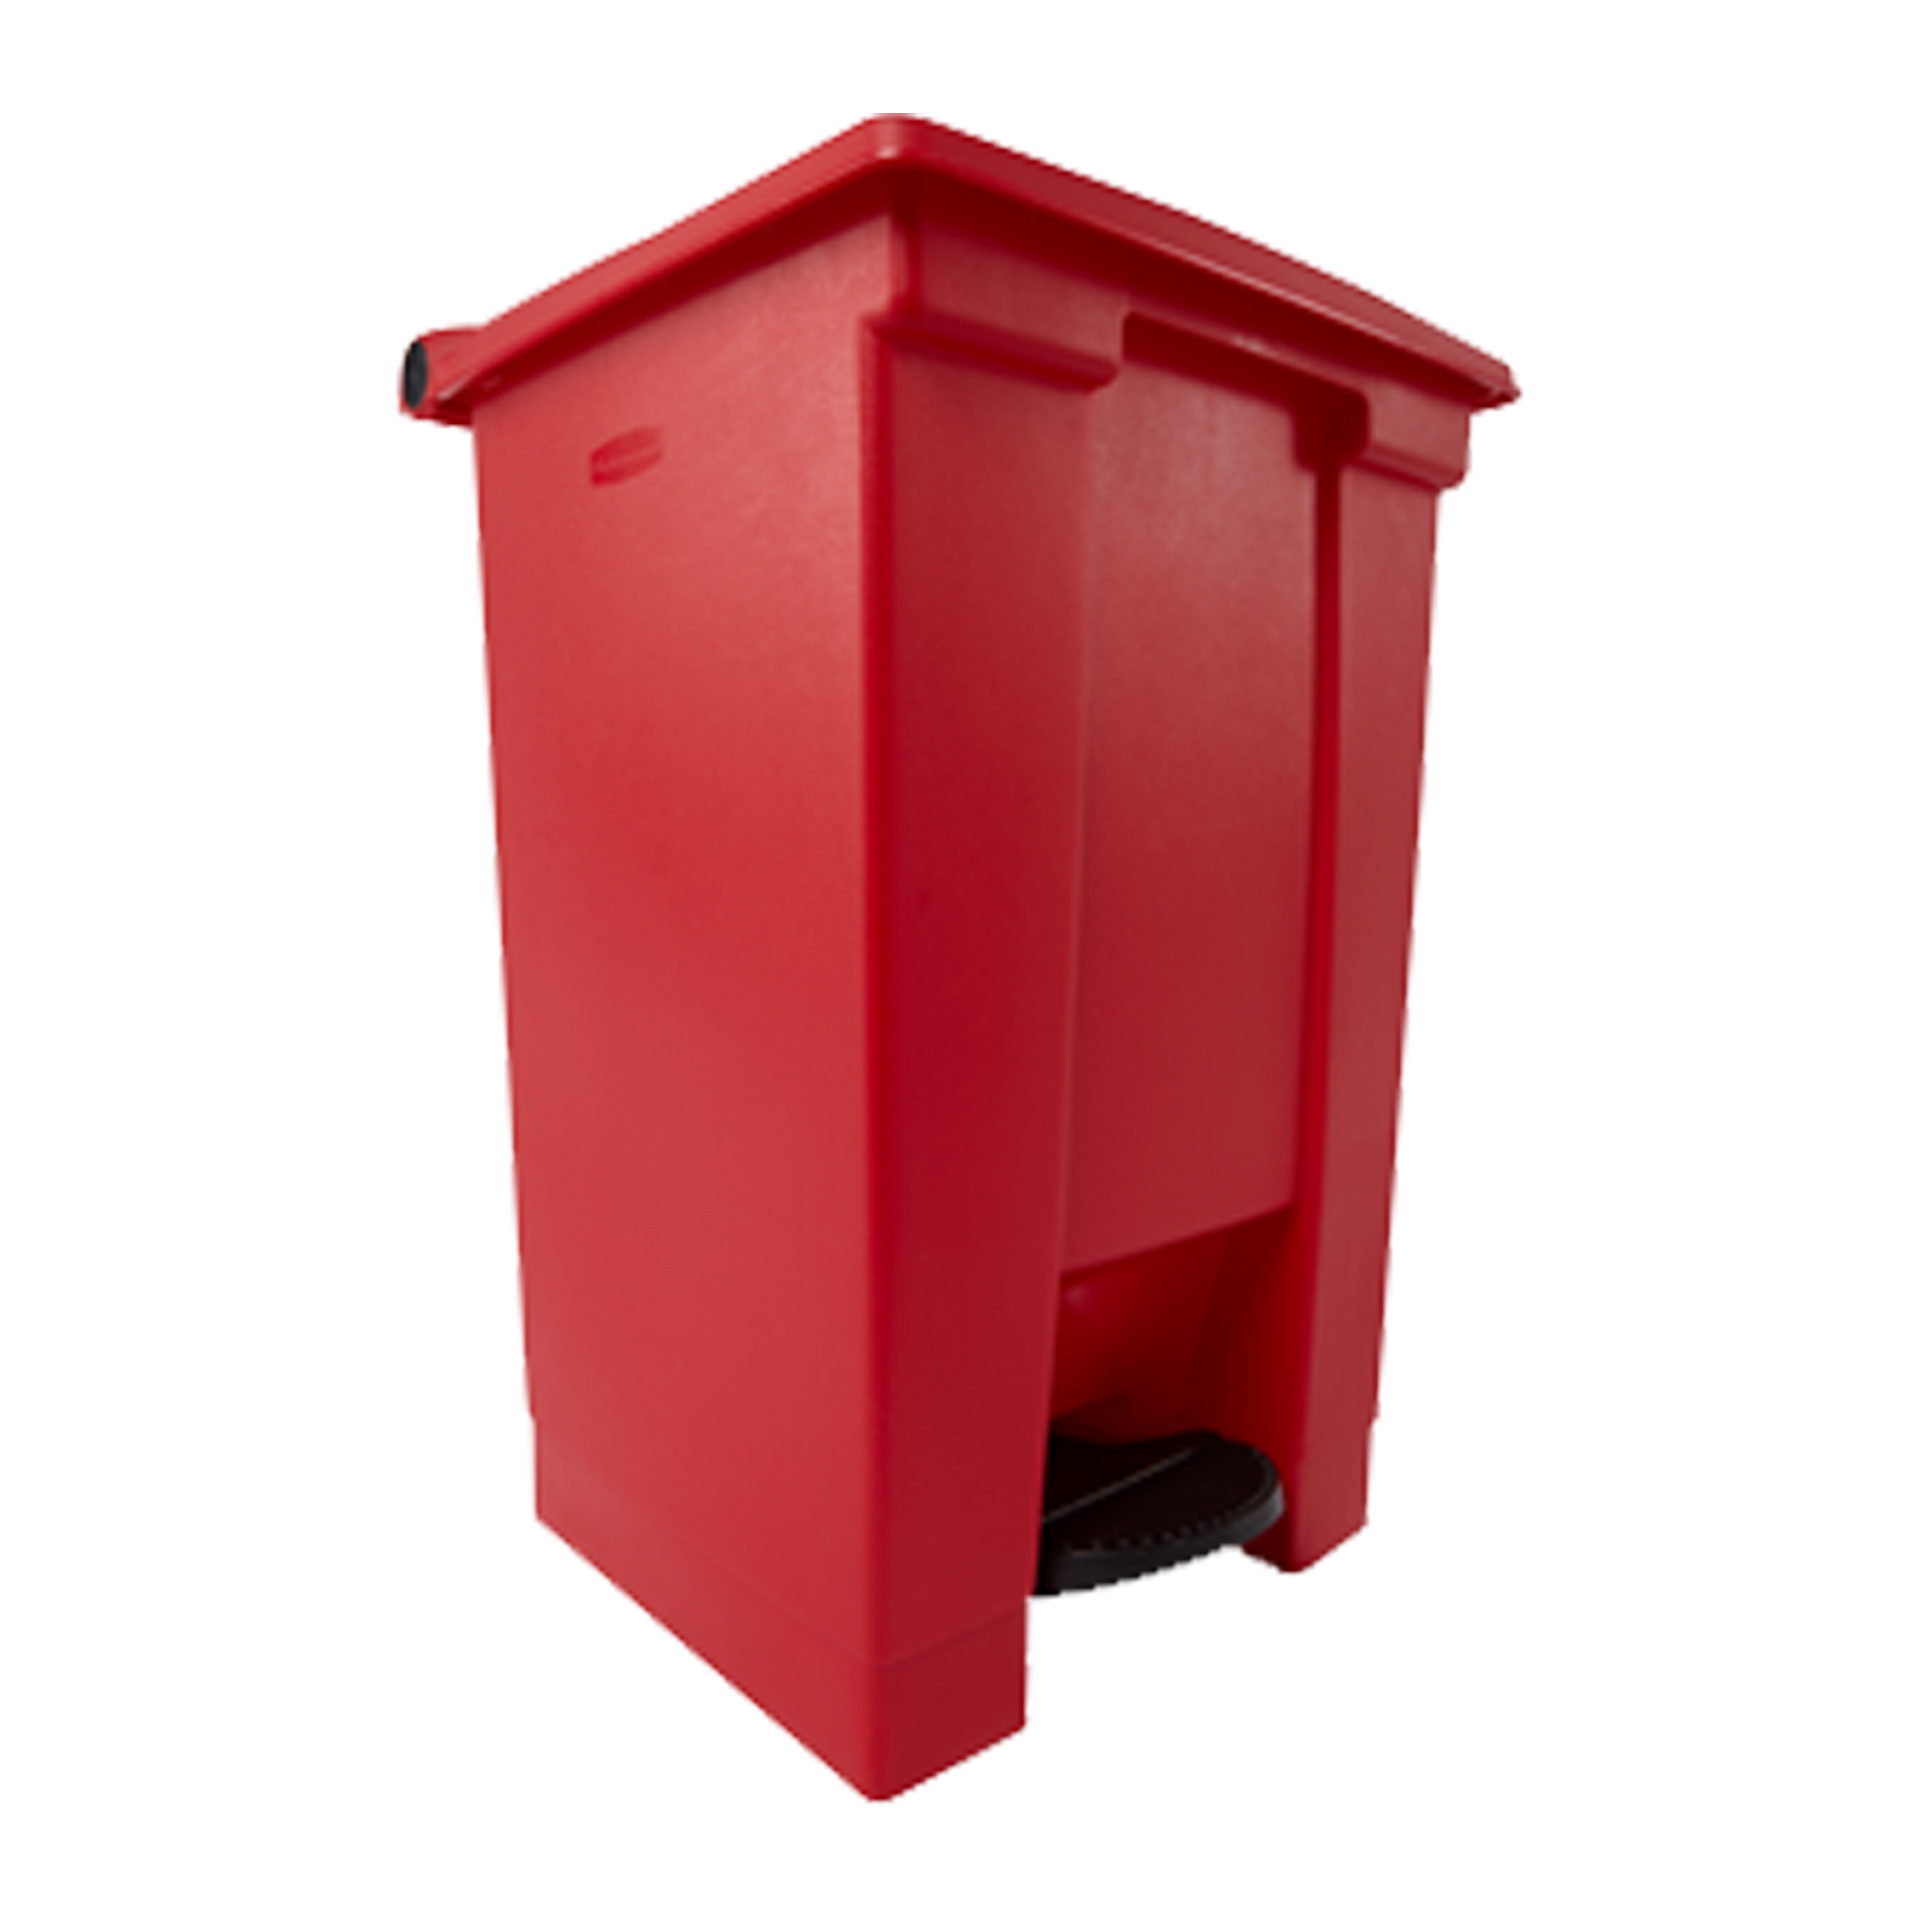 ถังขยะแบบเท้าเหยียบ Legacy Step-On Container ขนาด 45.42 ลิตร สีแดง